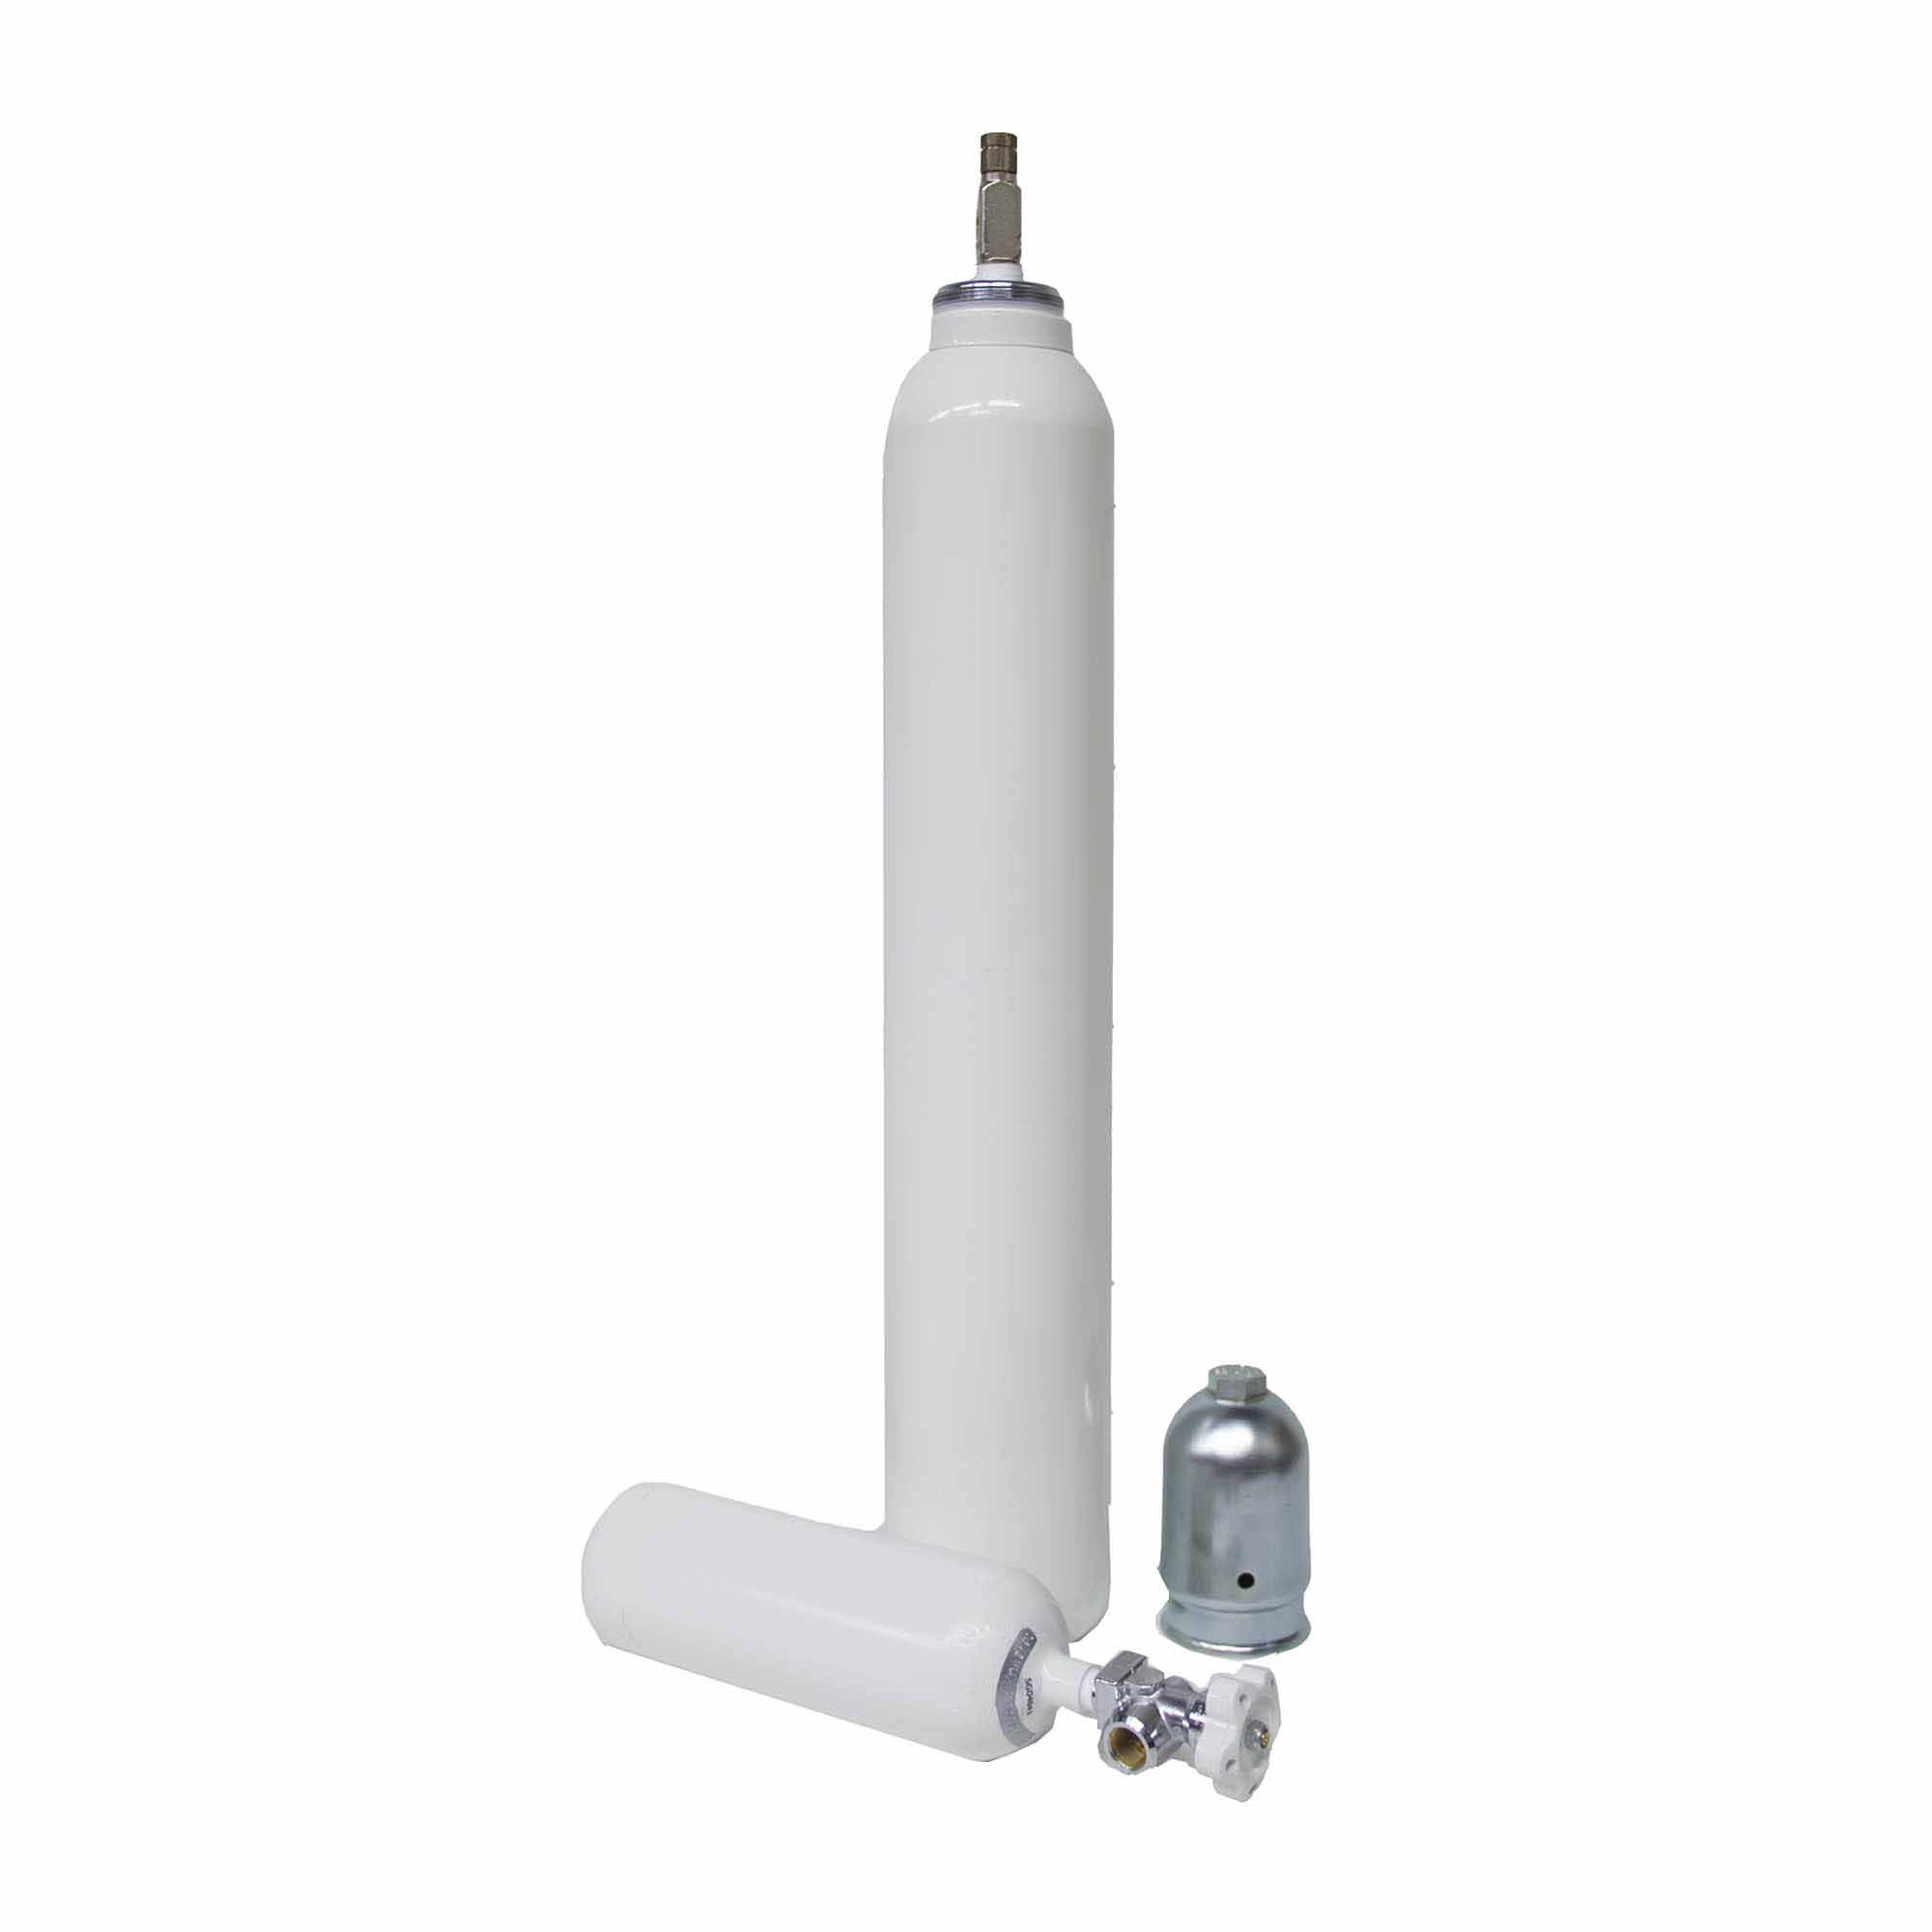 Dräger: Medical oxygen koffer RPV valve / Bull-Nose (w/o cylinder)